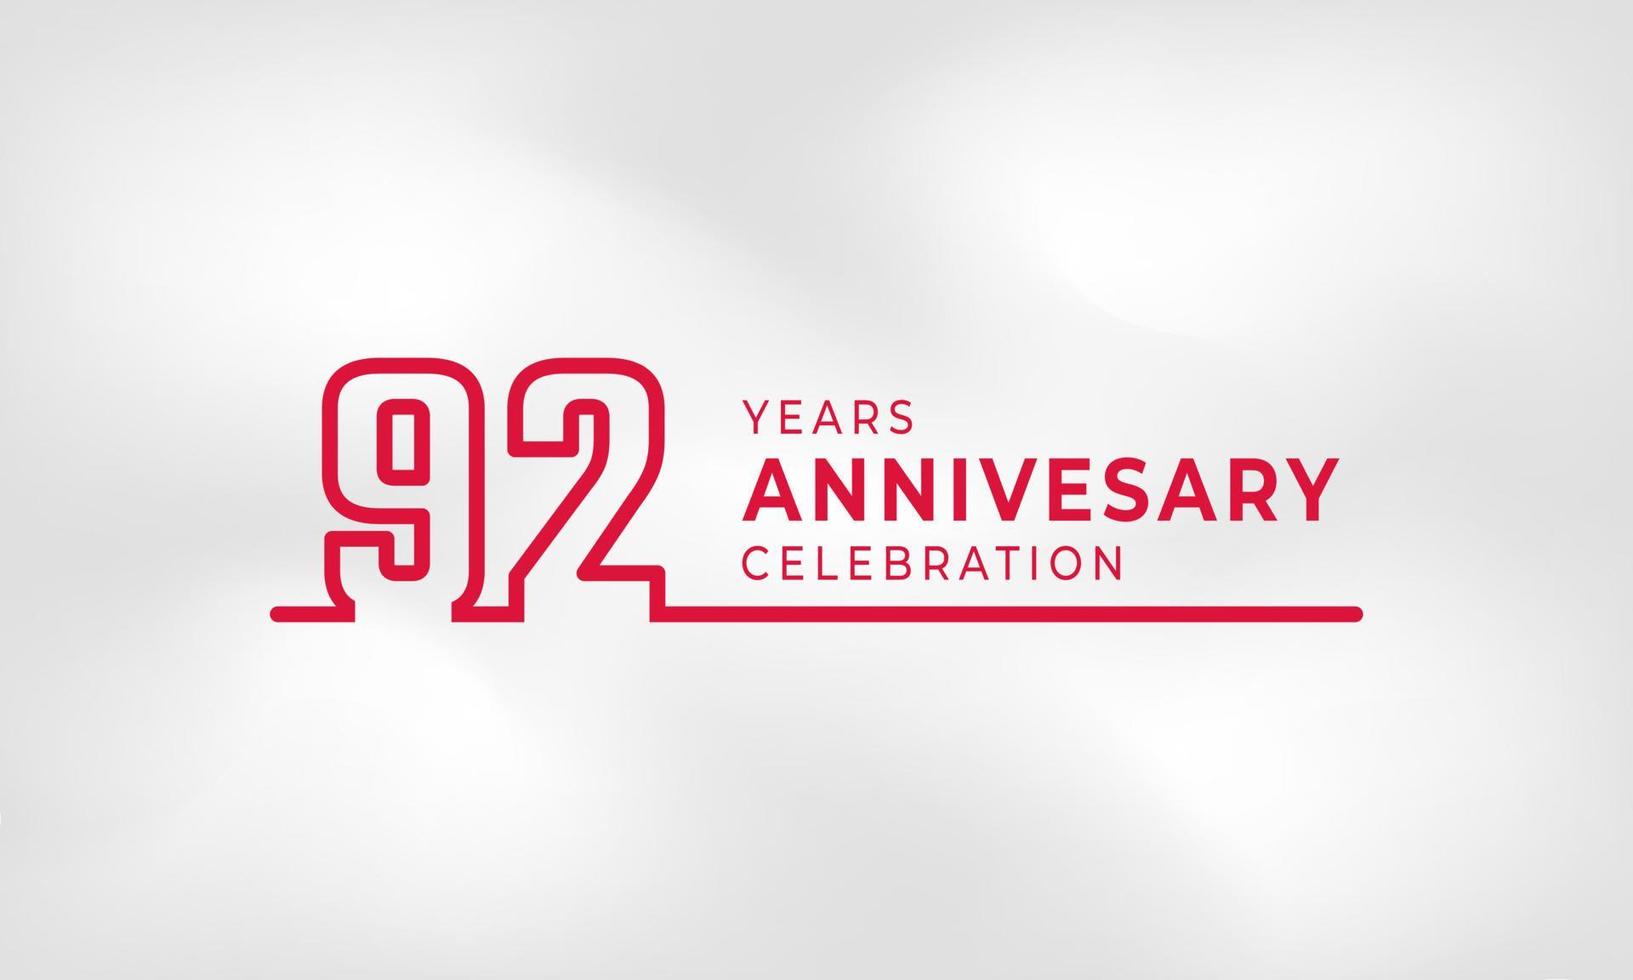 Celebrazione dell'anniversario di 92 anni logotipo collegato numero di contorno colore rosso per evento di celebrazione, matrimonio, biglietto di auguri e invito isolato su sfondo bianco trama vettore